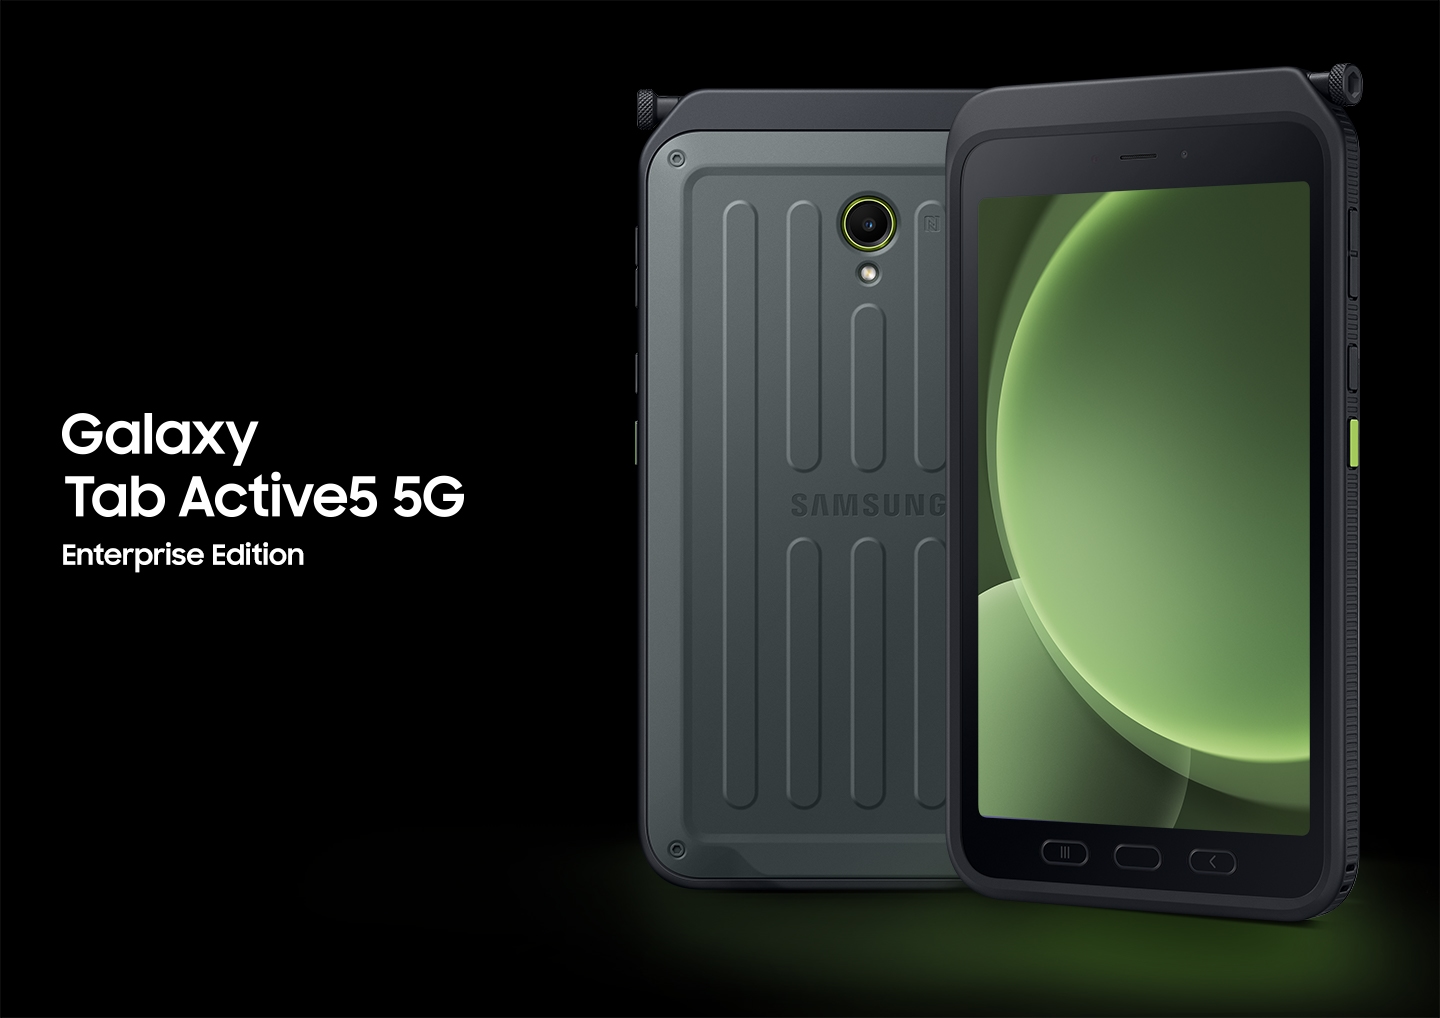 Gezeigt werden zwei Galaxy Tab Active5 5G. Das linke Galaxy Tab zeigt die Rückseite, das Rechte die Vorderseite mit grünlich leuchtenden Kreisformen auf dem Bildschirm.